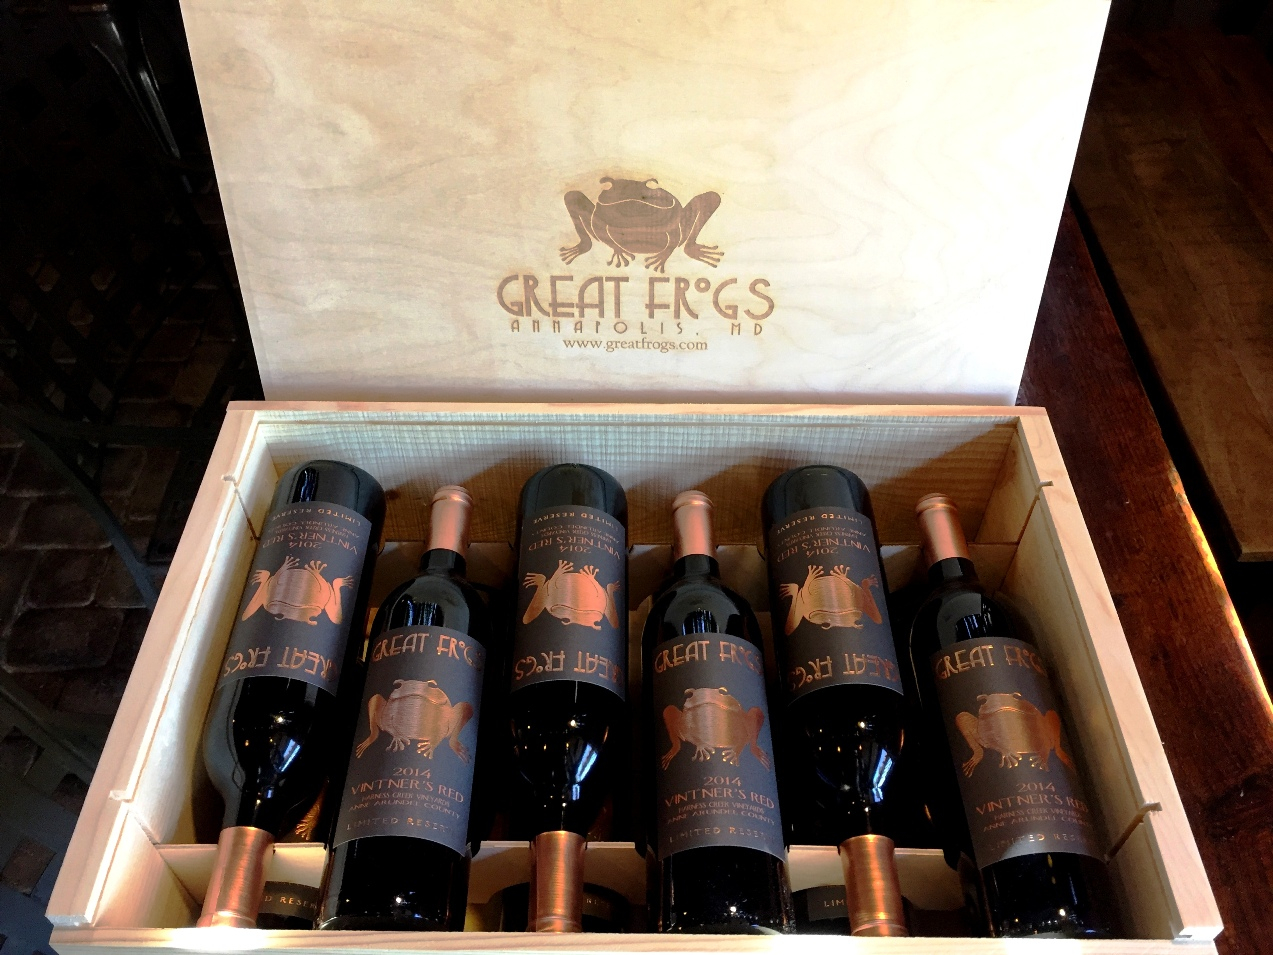 Great frogs 12 bottle wine box